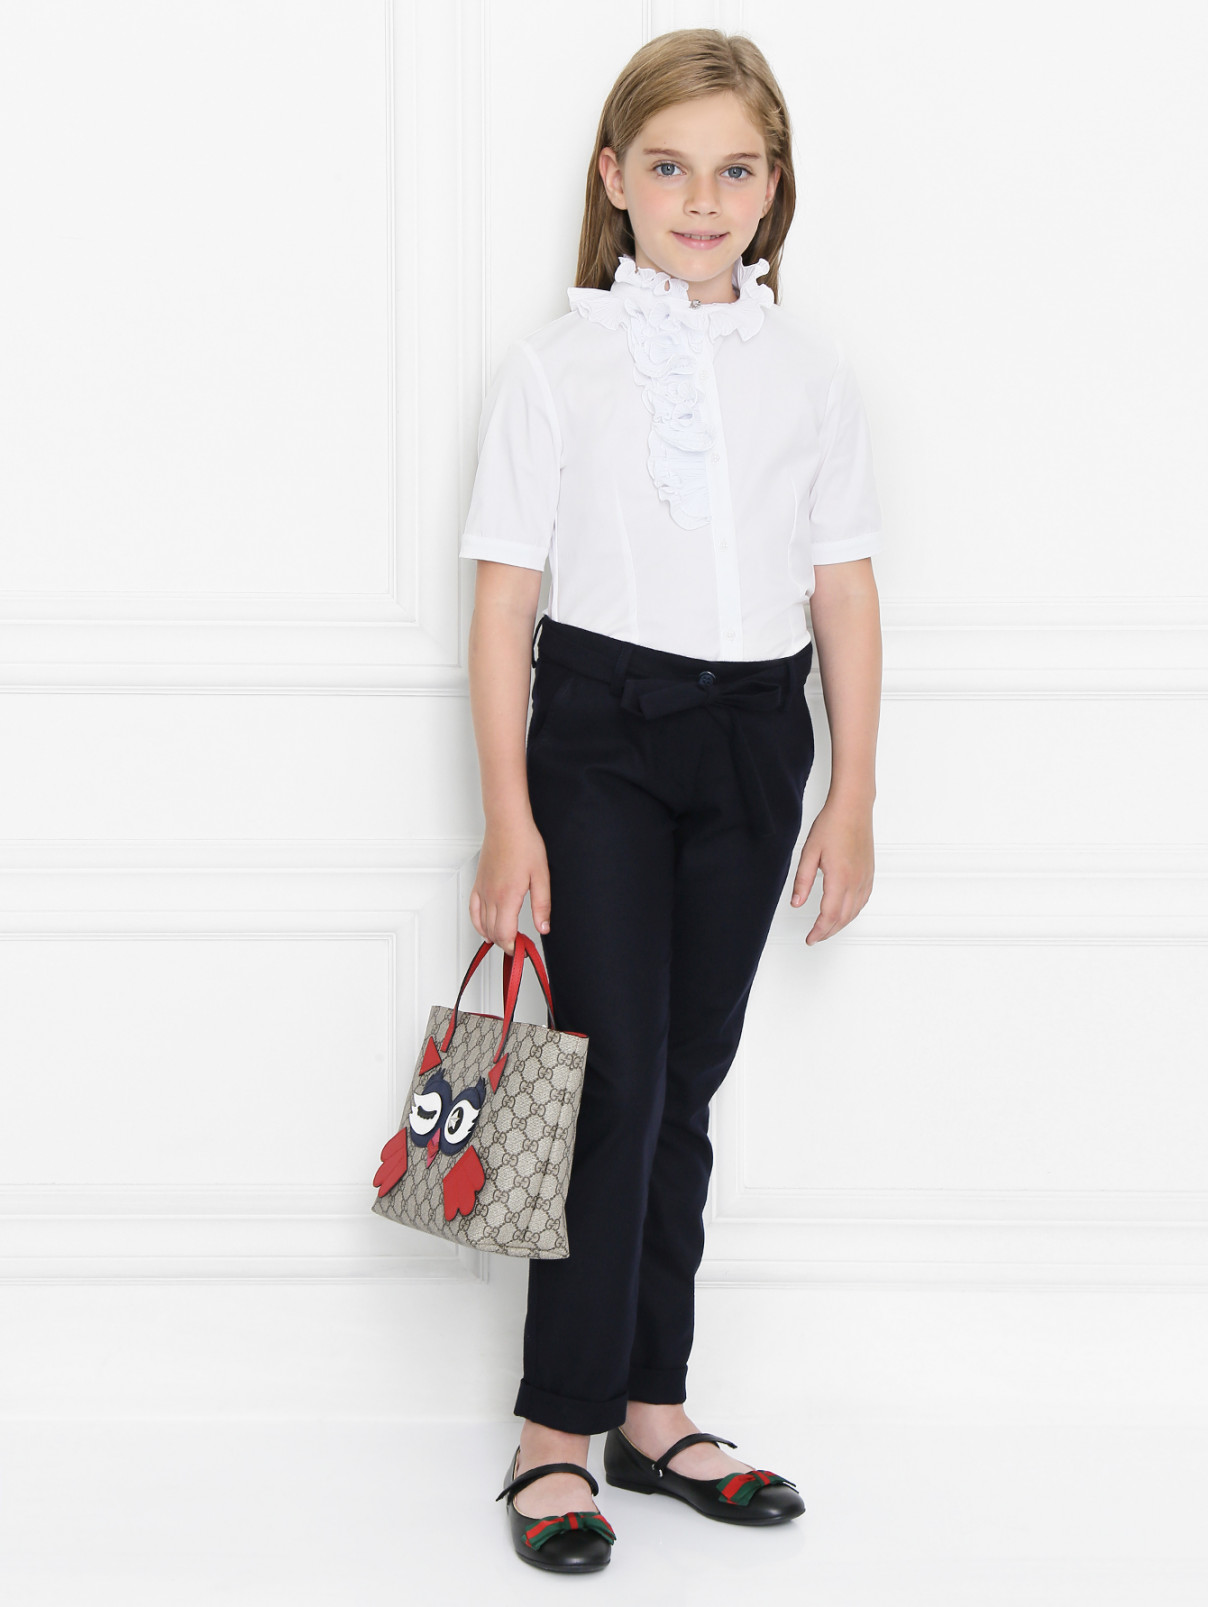 Хлопковая блуза с коротким рукавом Aletta Couture  –  Модель Общий вид  – Цвет:  Белый